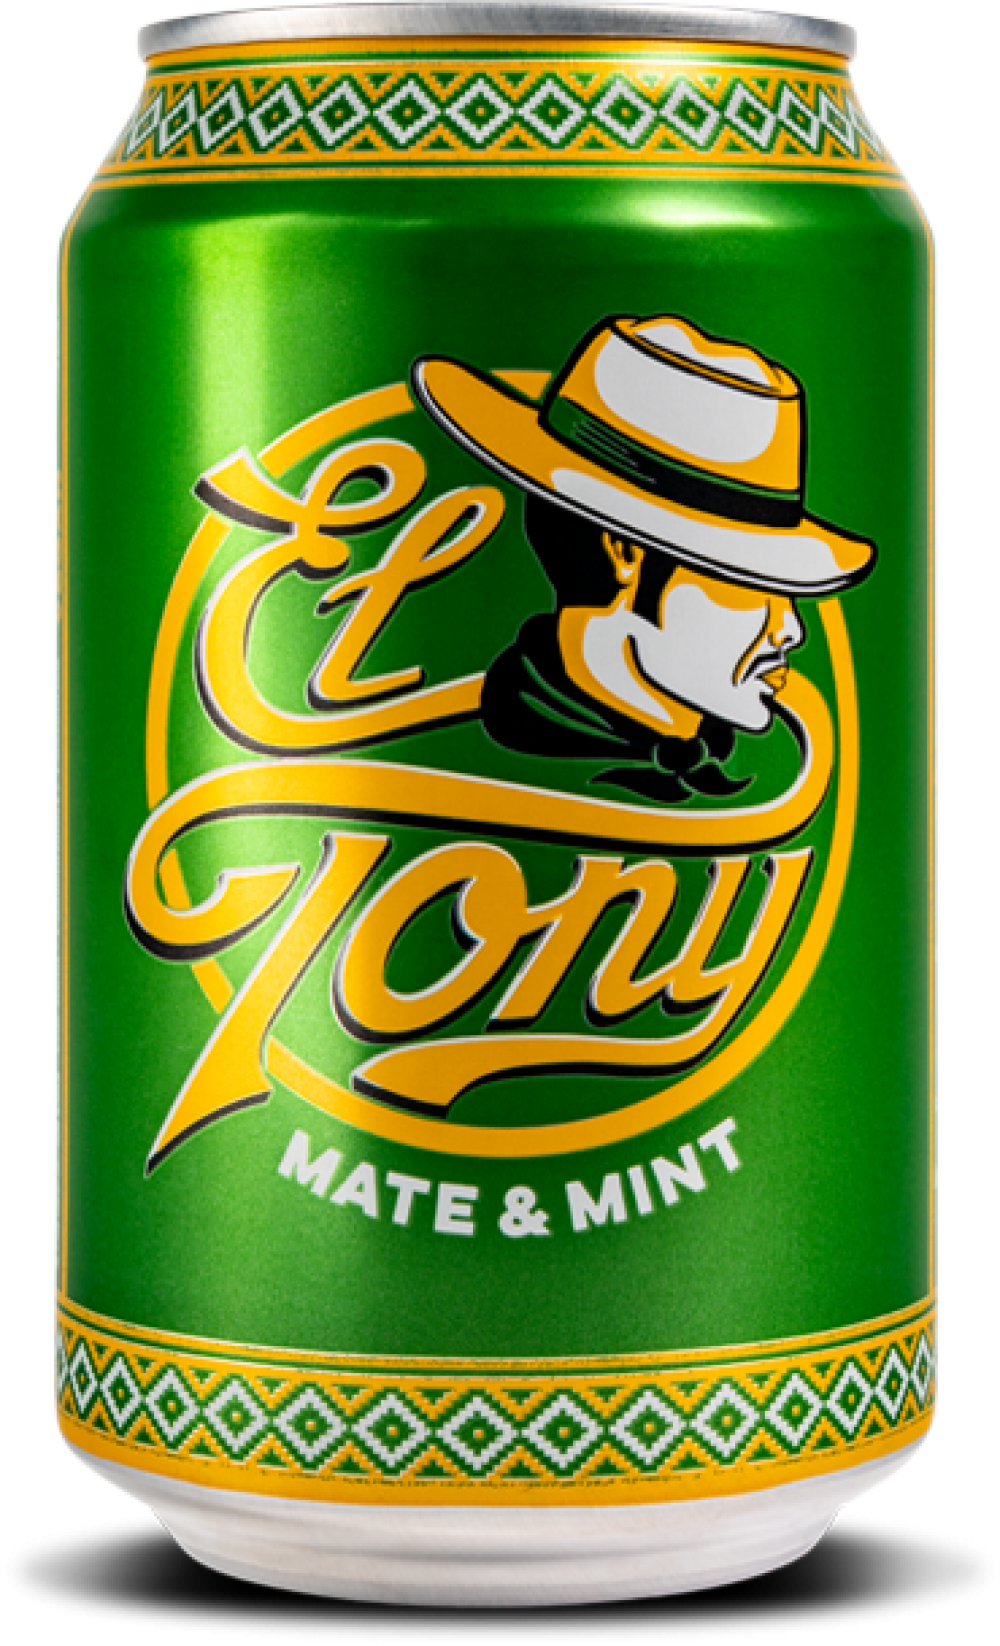 El Tony
«Mate & Mint»